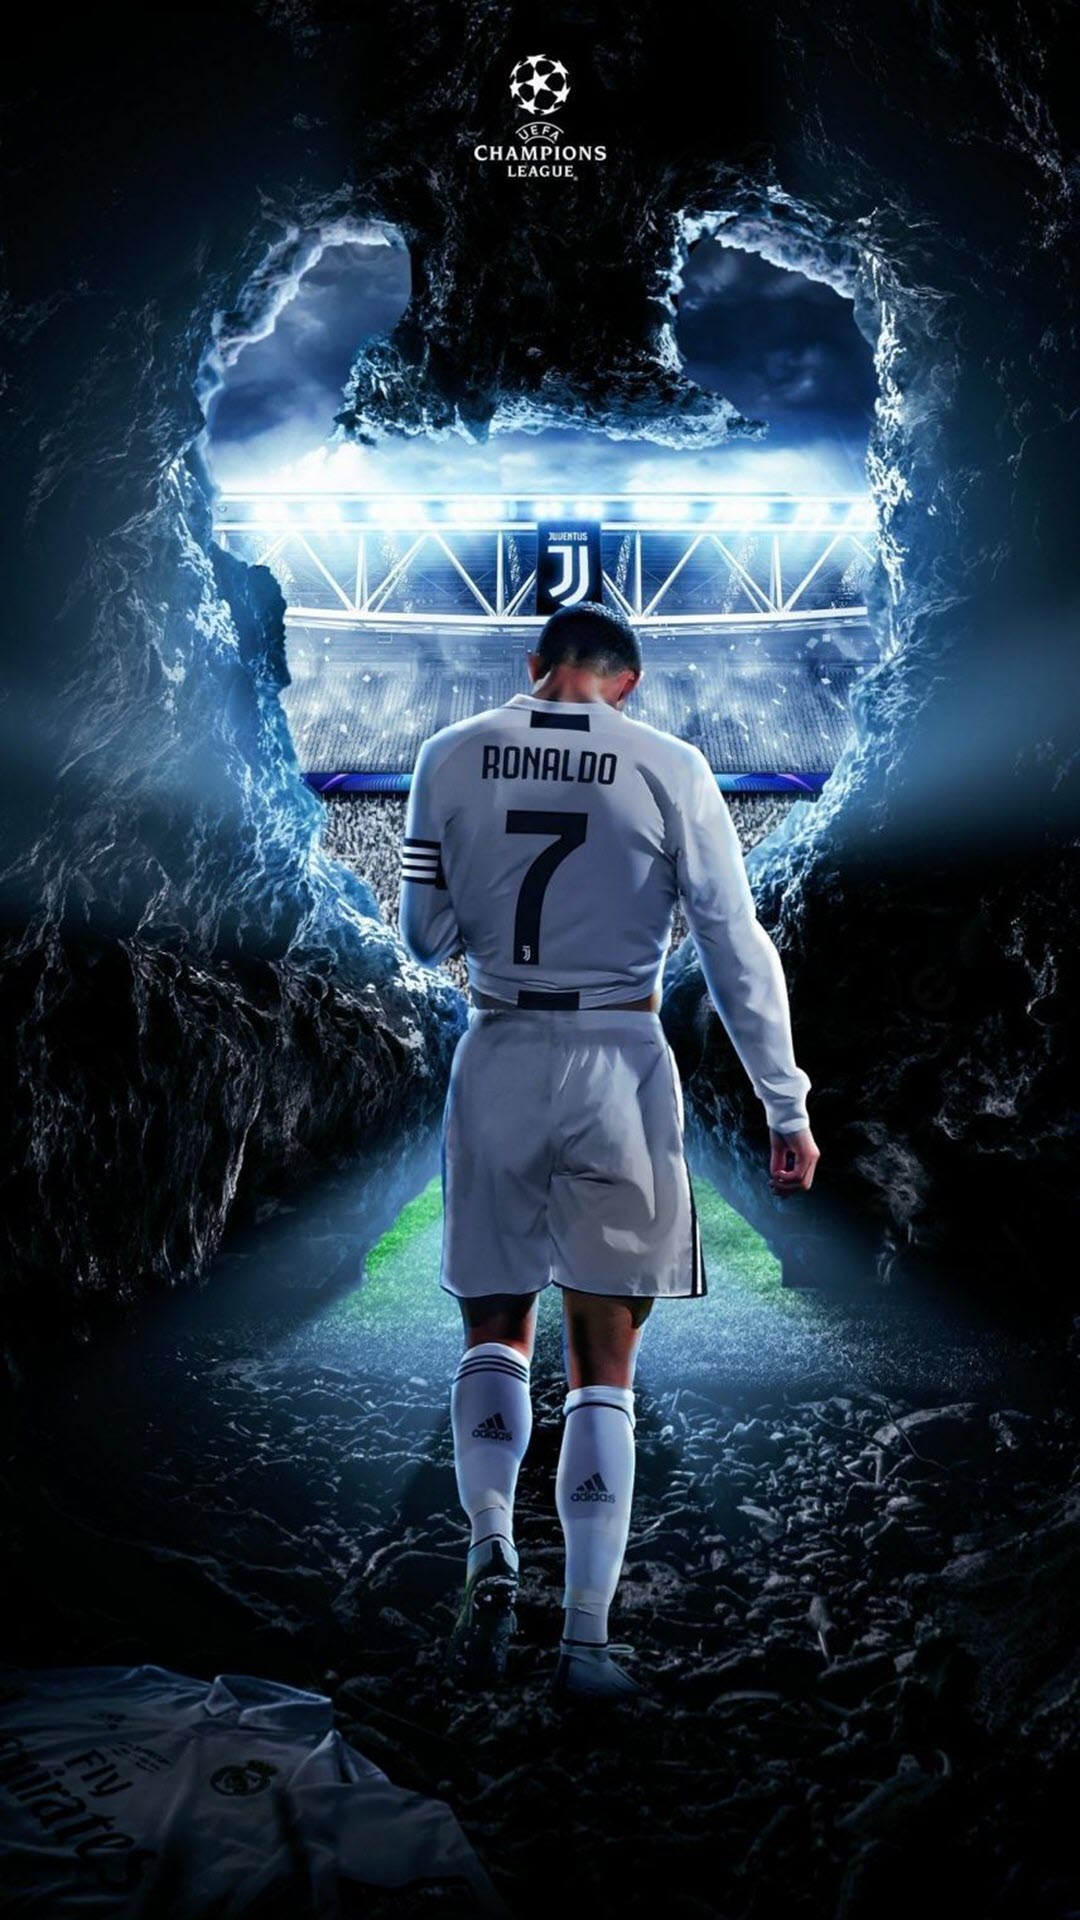 Ronaldo ra mắt MU: Cỗ máy ghi bàn và kiếm tiền